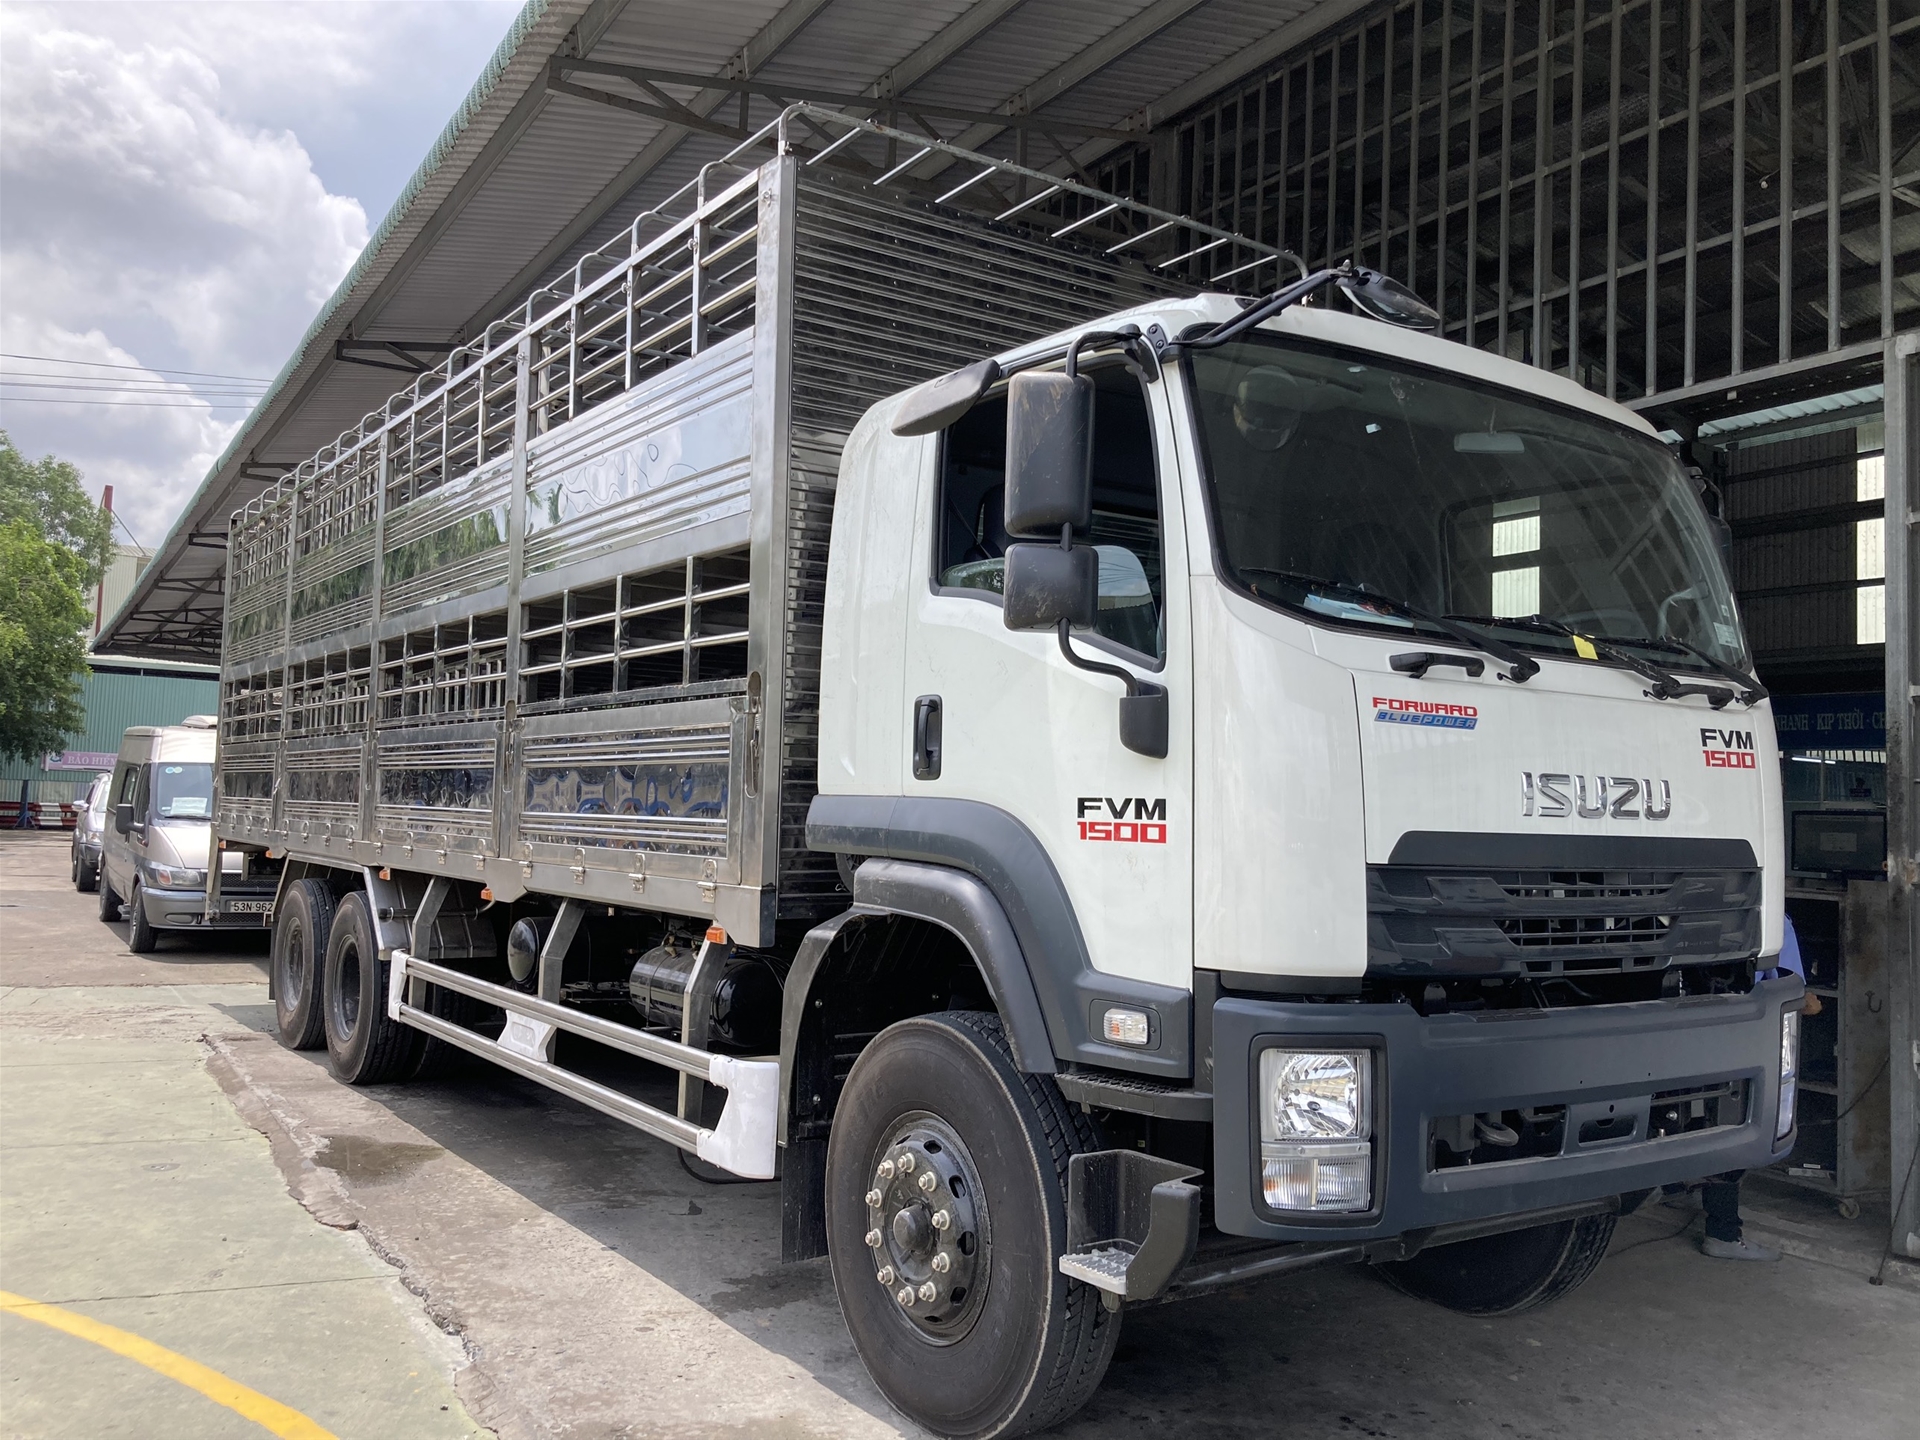 Cho thuê xe tải chở gia súc I Lh: 0949 90 96 98 Logistics An Khang